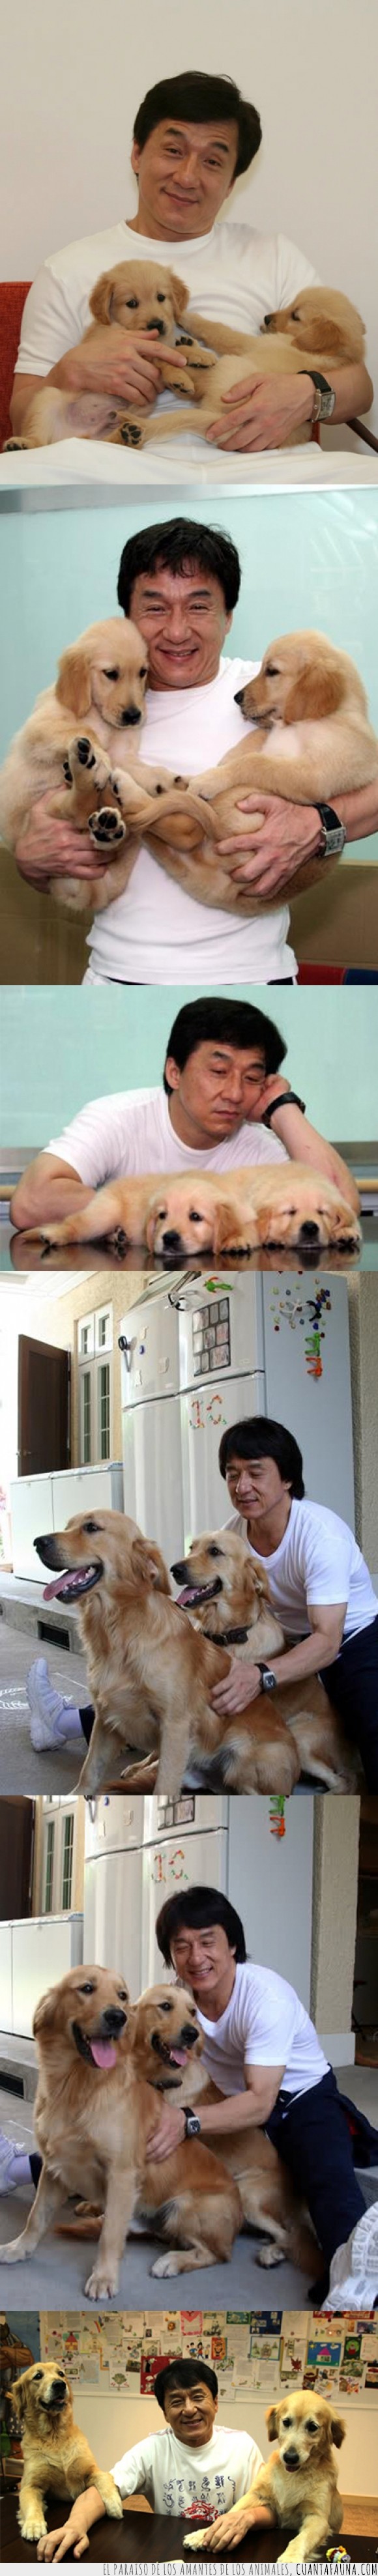 sonrisa,perro,perrete,labrador,Jackie Chan,feliz,cachorro